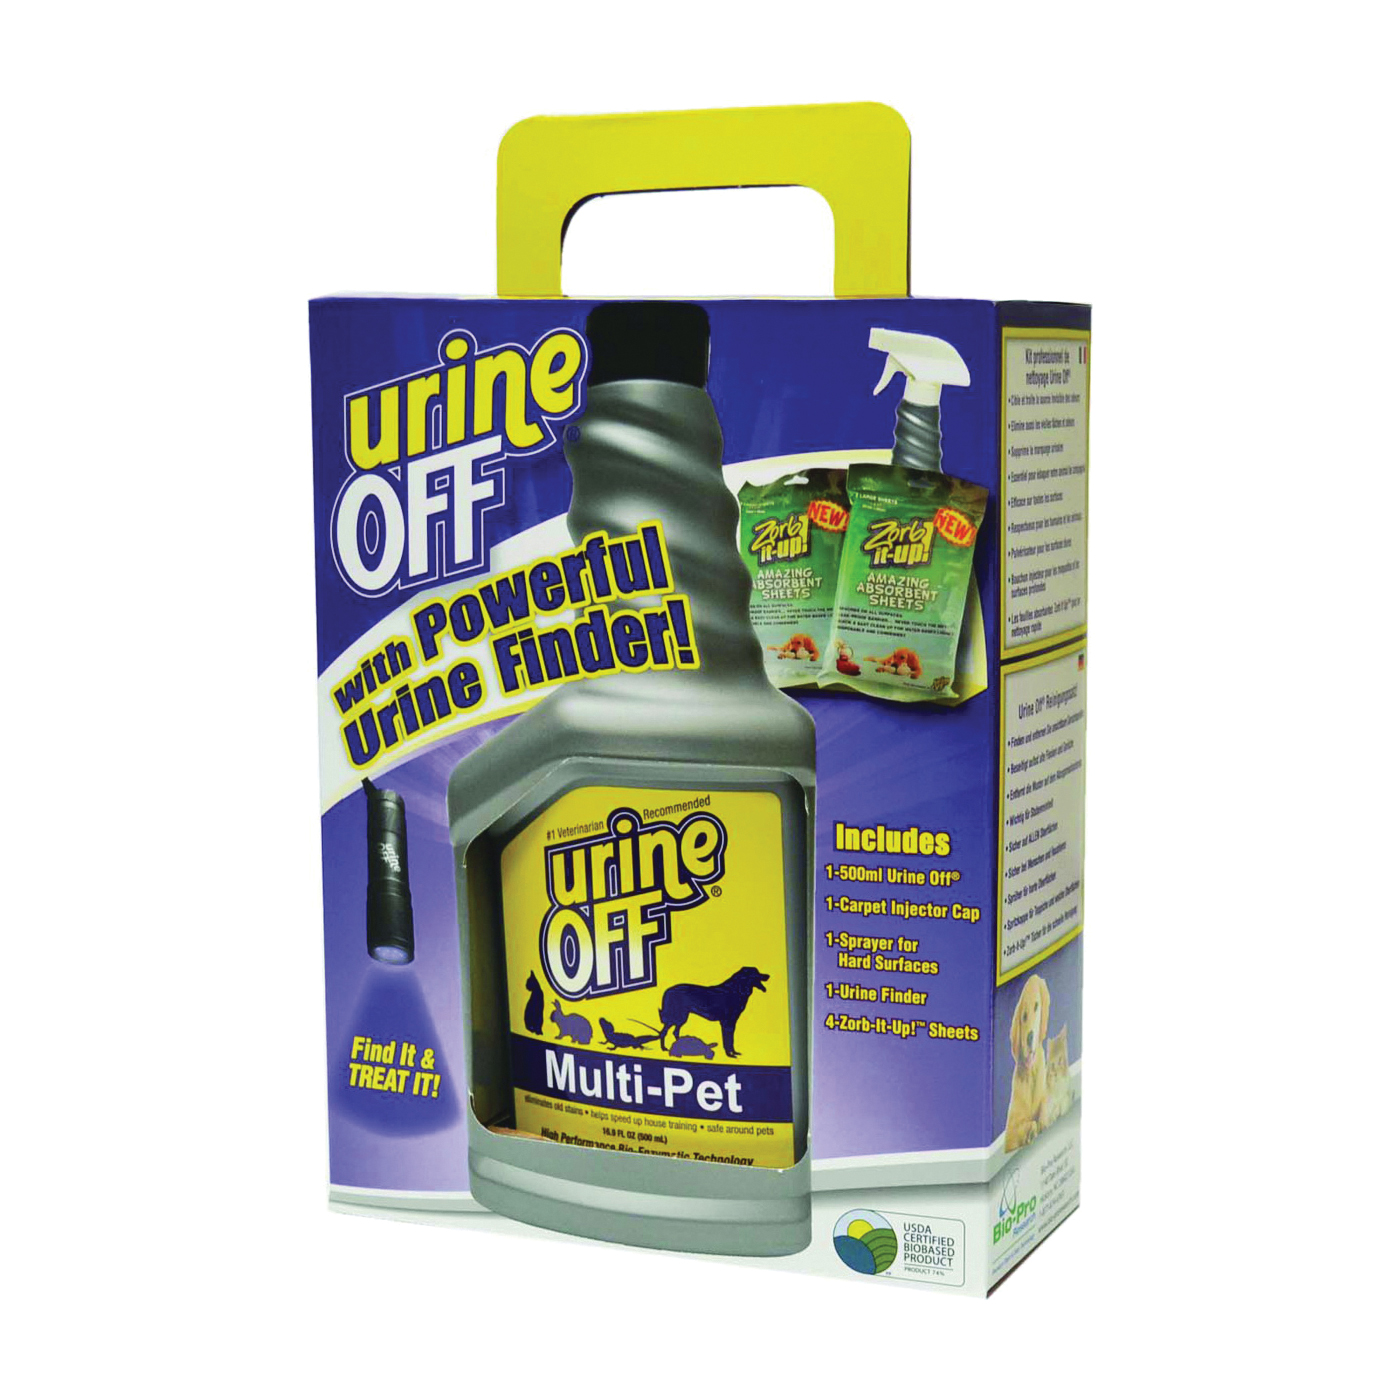 Urine Off MR1115